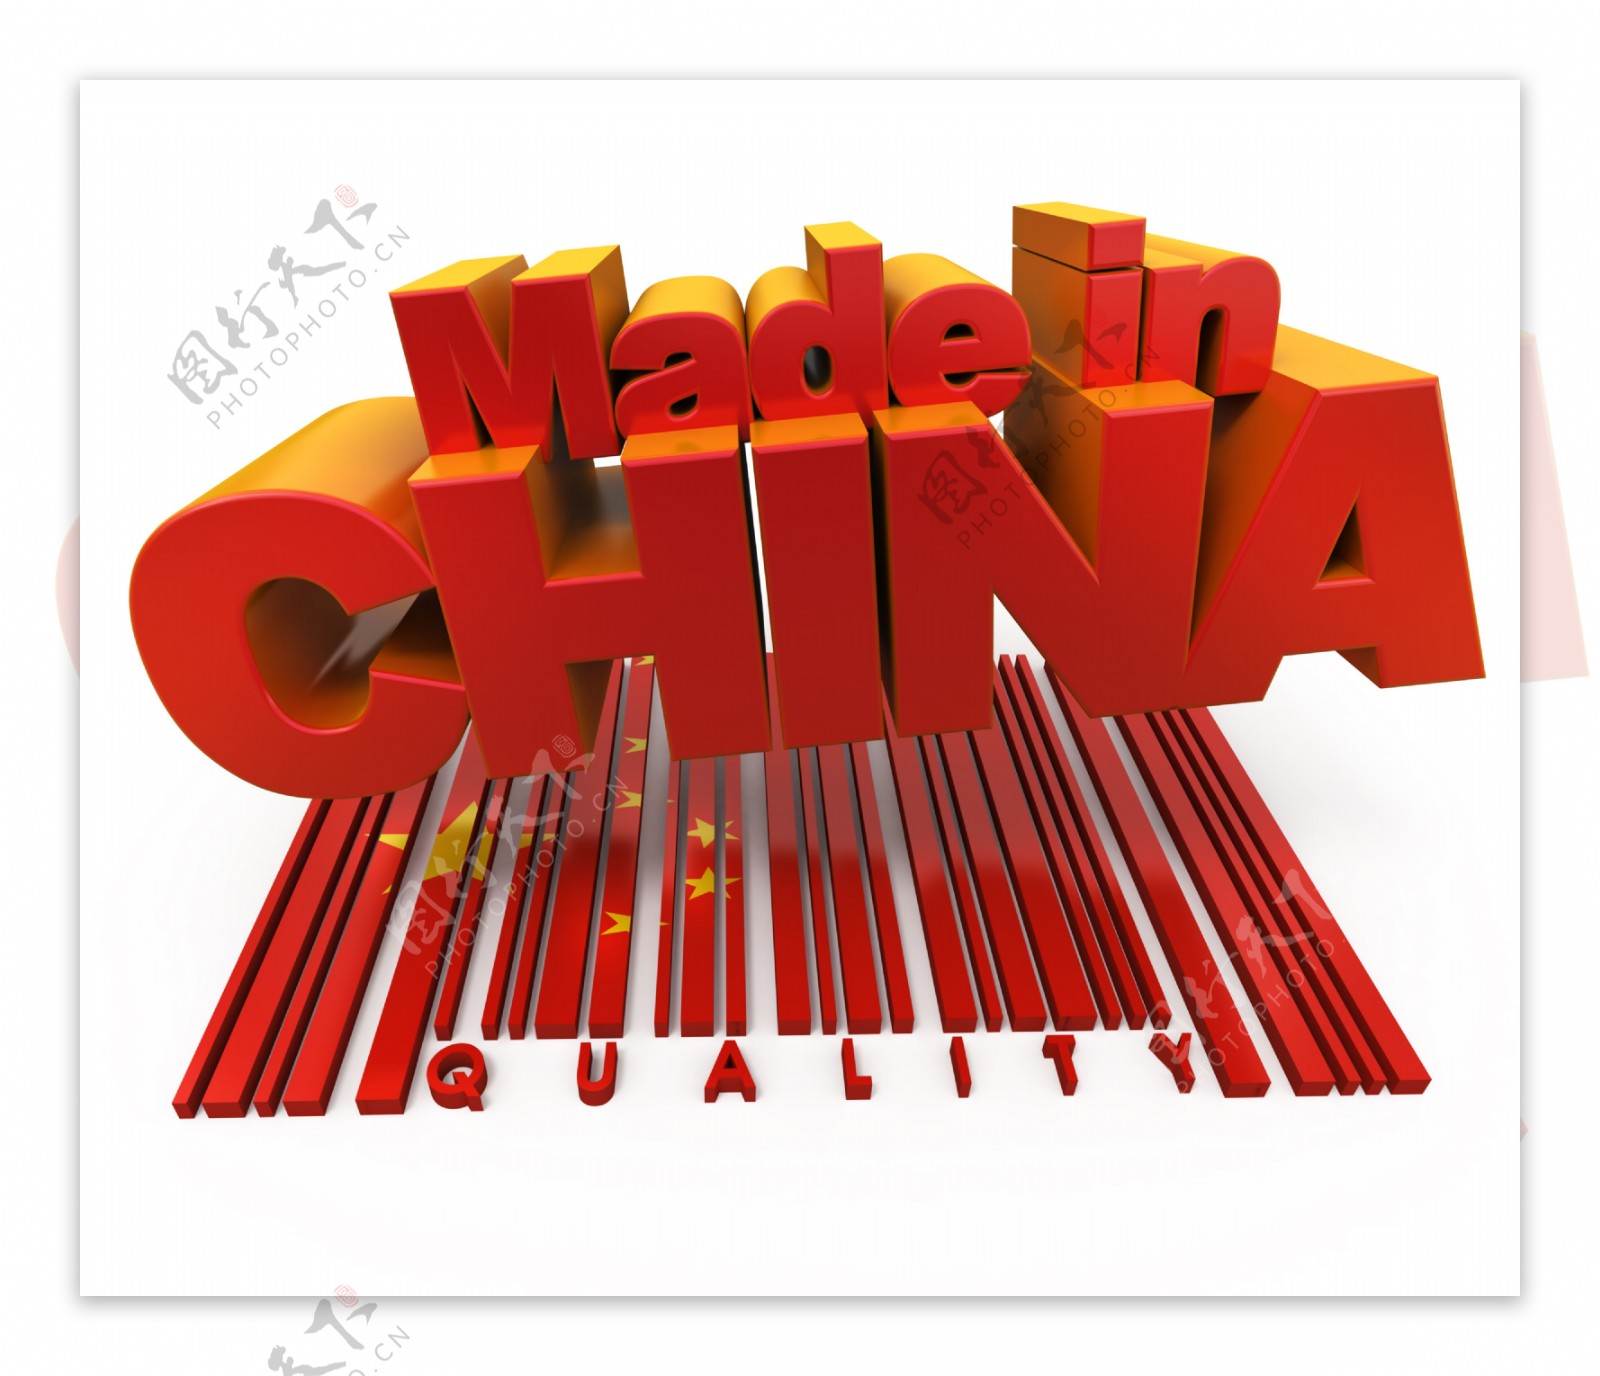 中国制造图标